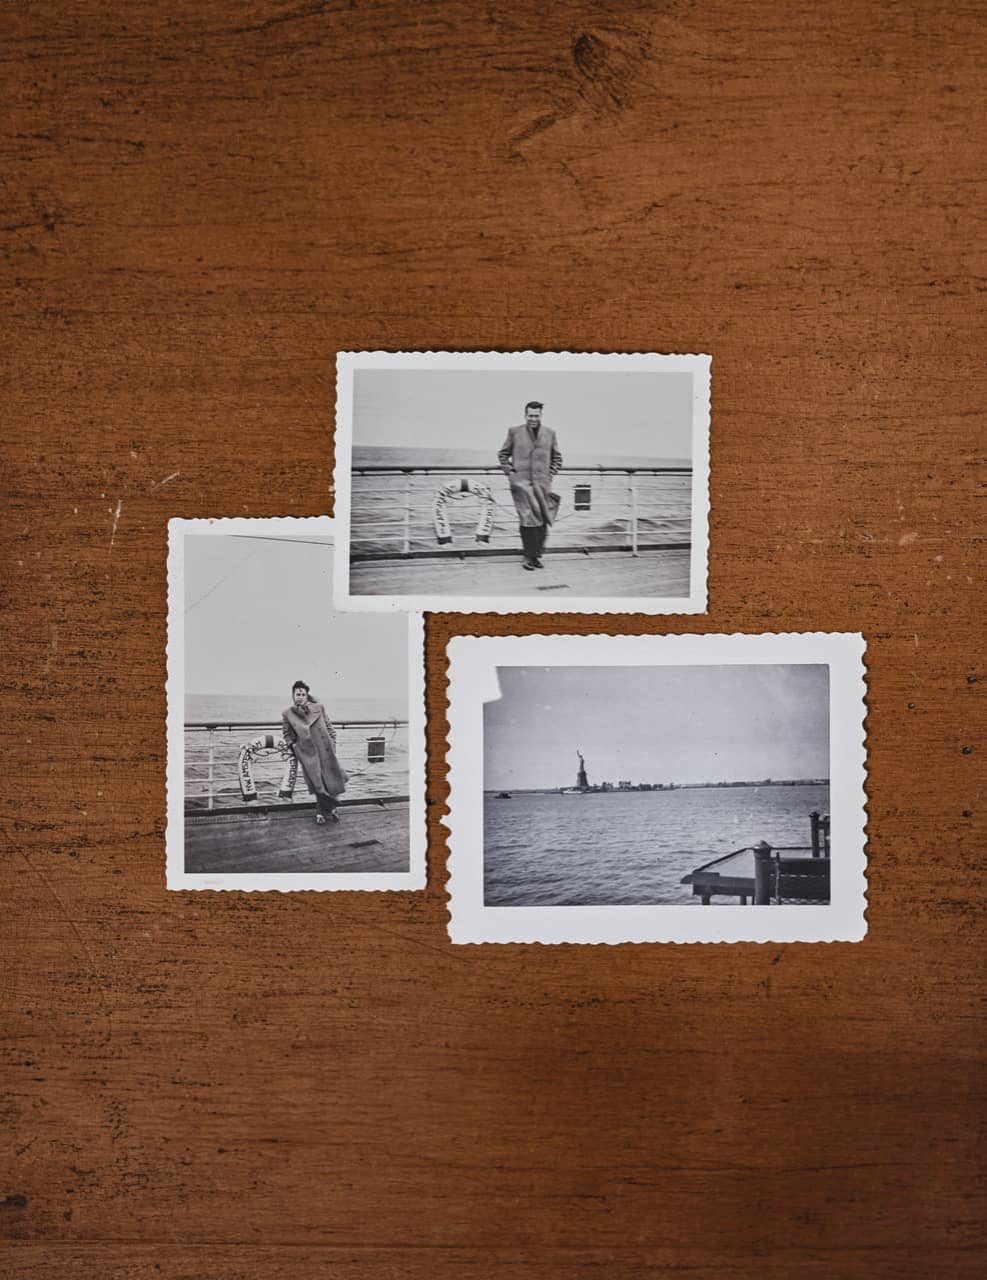 Curt und Ruth Bloch reisen 1948 von Rotterdam per Schiff in die USA ein. Die Fotos zeigen das Einlaufen in New York.